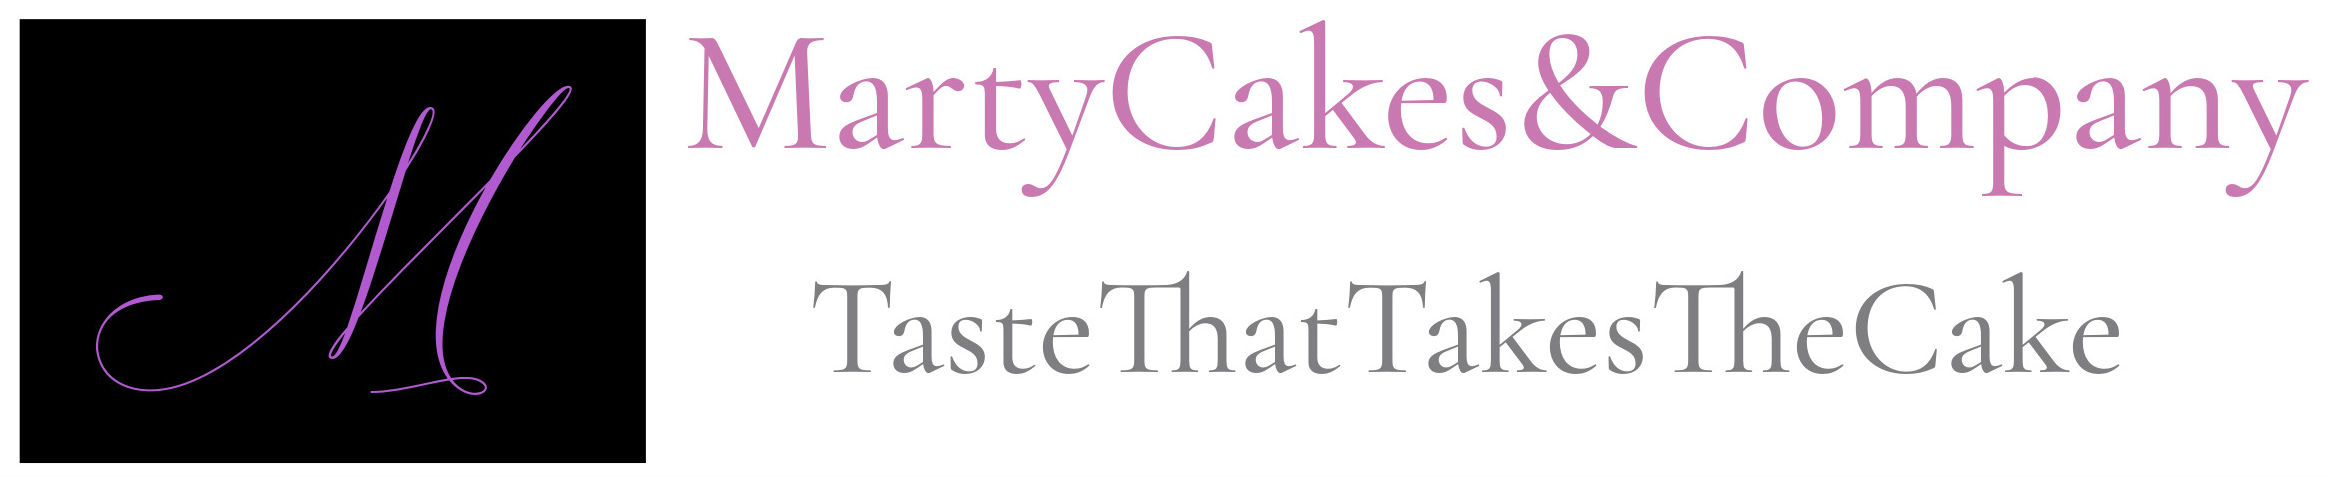 Marty Cakes & Company